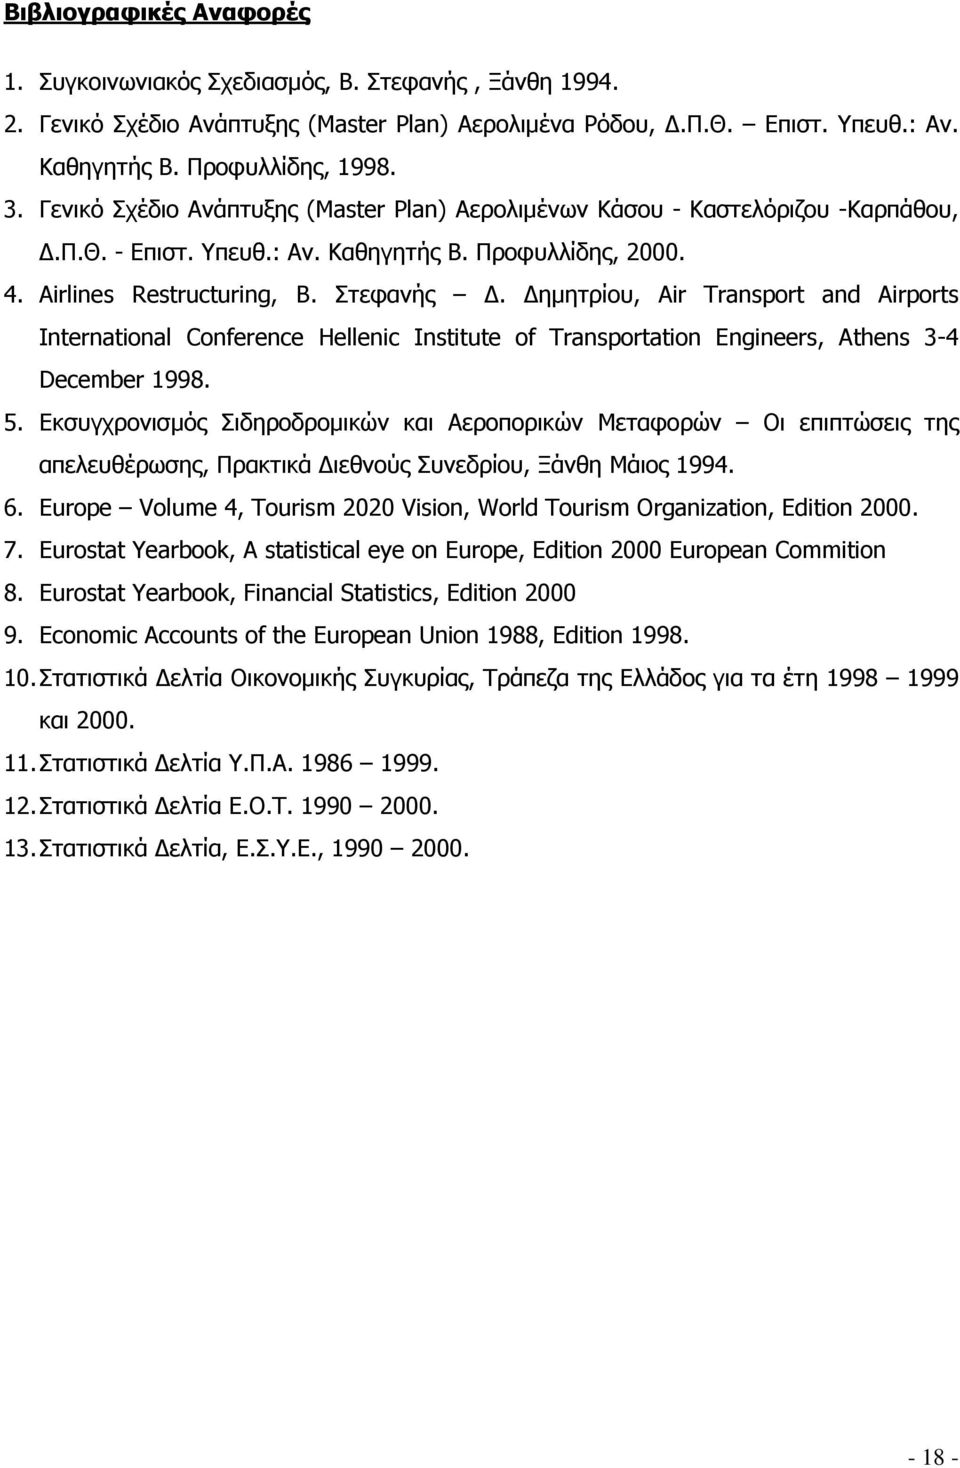 Δημητρίου, Air Transport and Airports International Conference Hellenic Institute of Transportation Engineers, Athens 3-4 December 1998. 5.